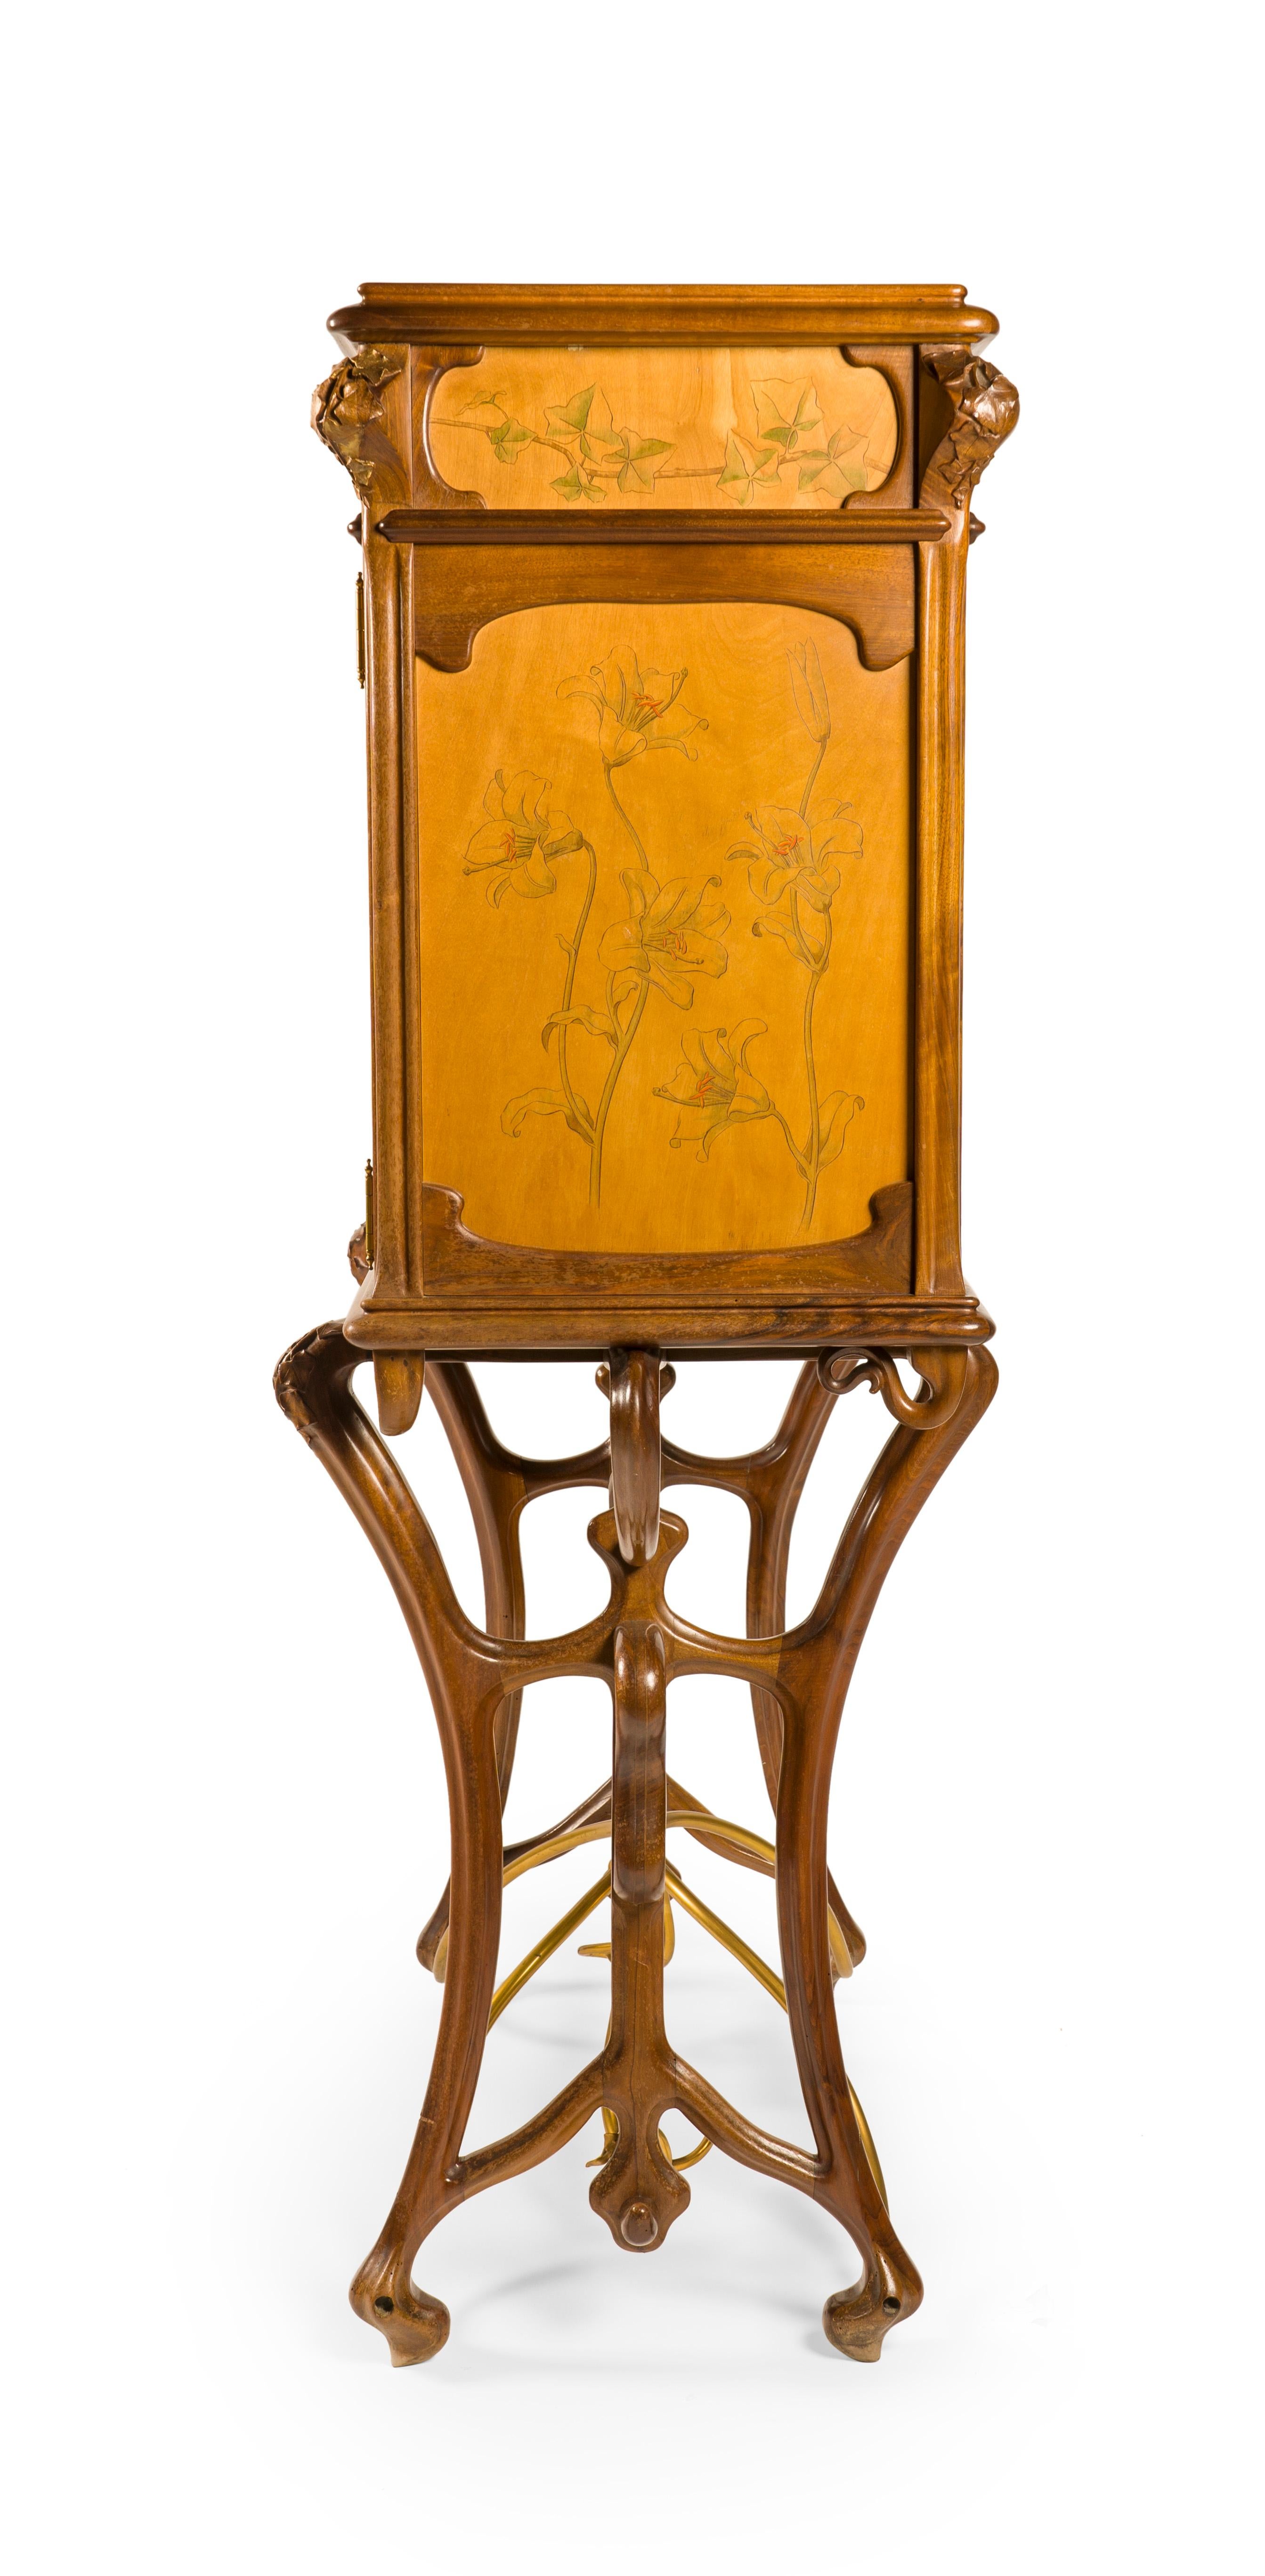 Joan Busquets Workshop Masterpiece Modernist Nouveau Desk Cabinet, ca. 1898 For Sale 2